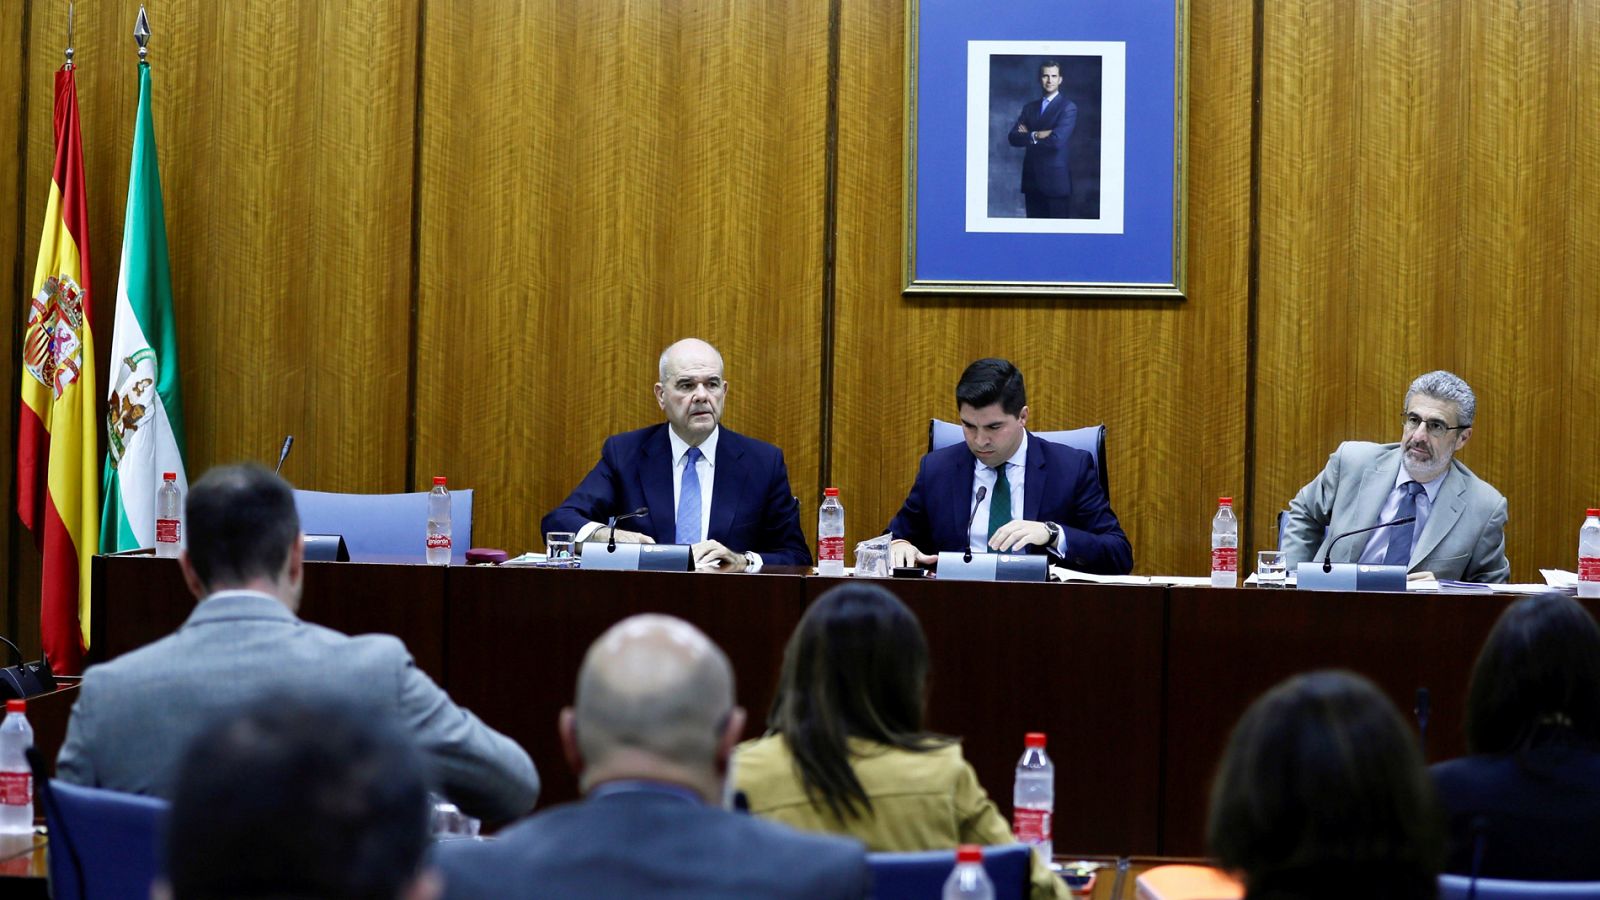 Chaves abandona la comisión sobre la Faffe en el Parlamento andaluz y denuncia "manipulación" electoral